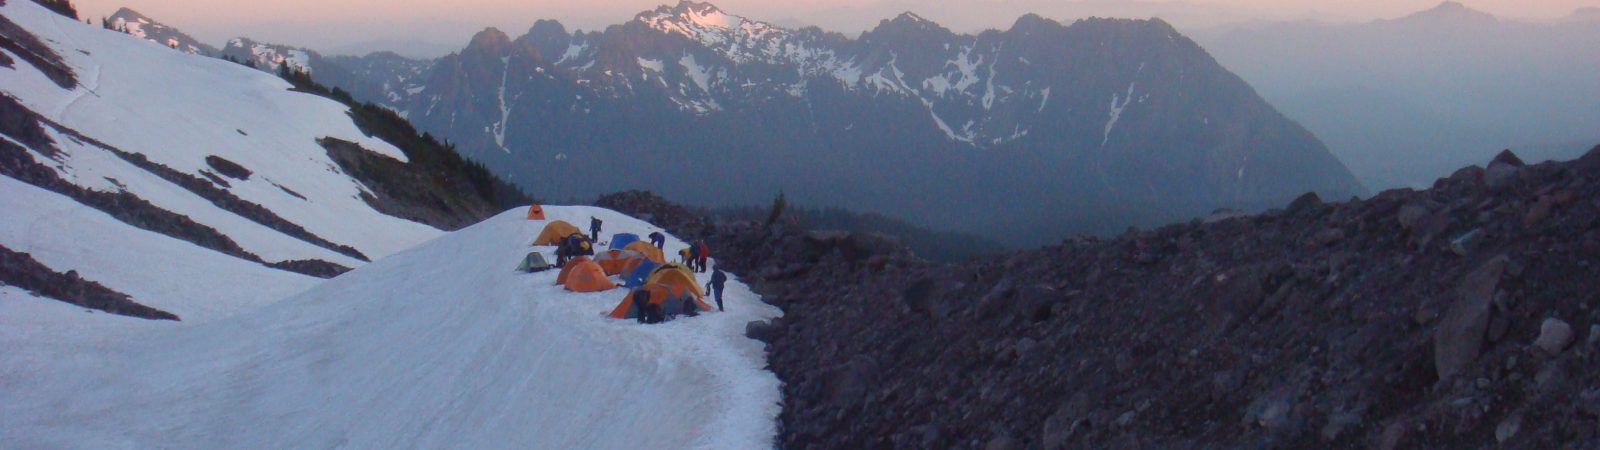 Camp on Mt Rainier